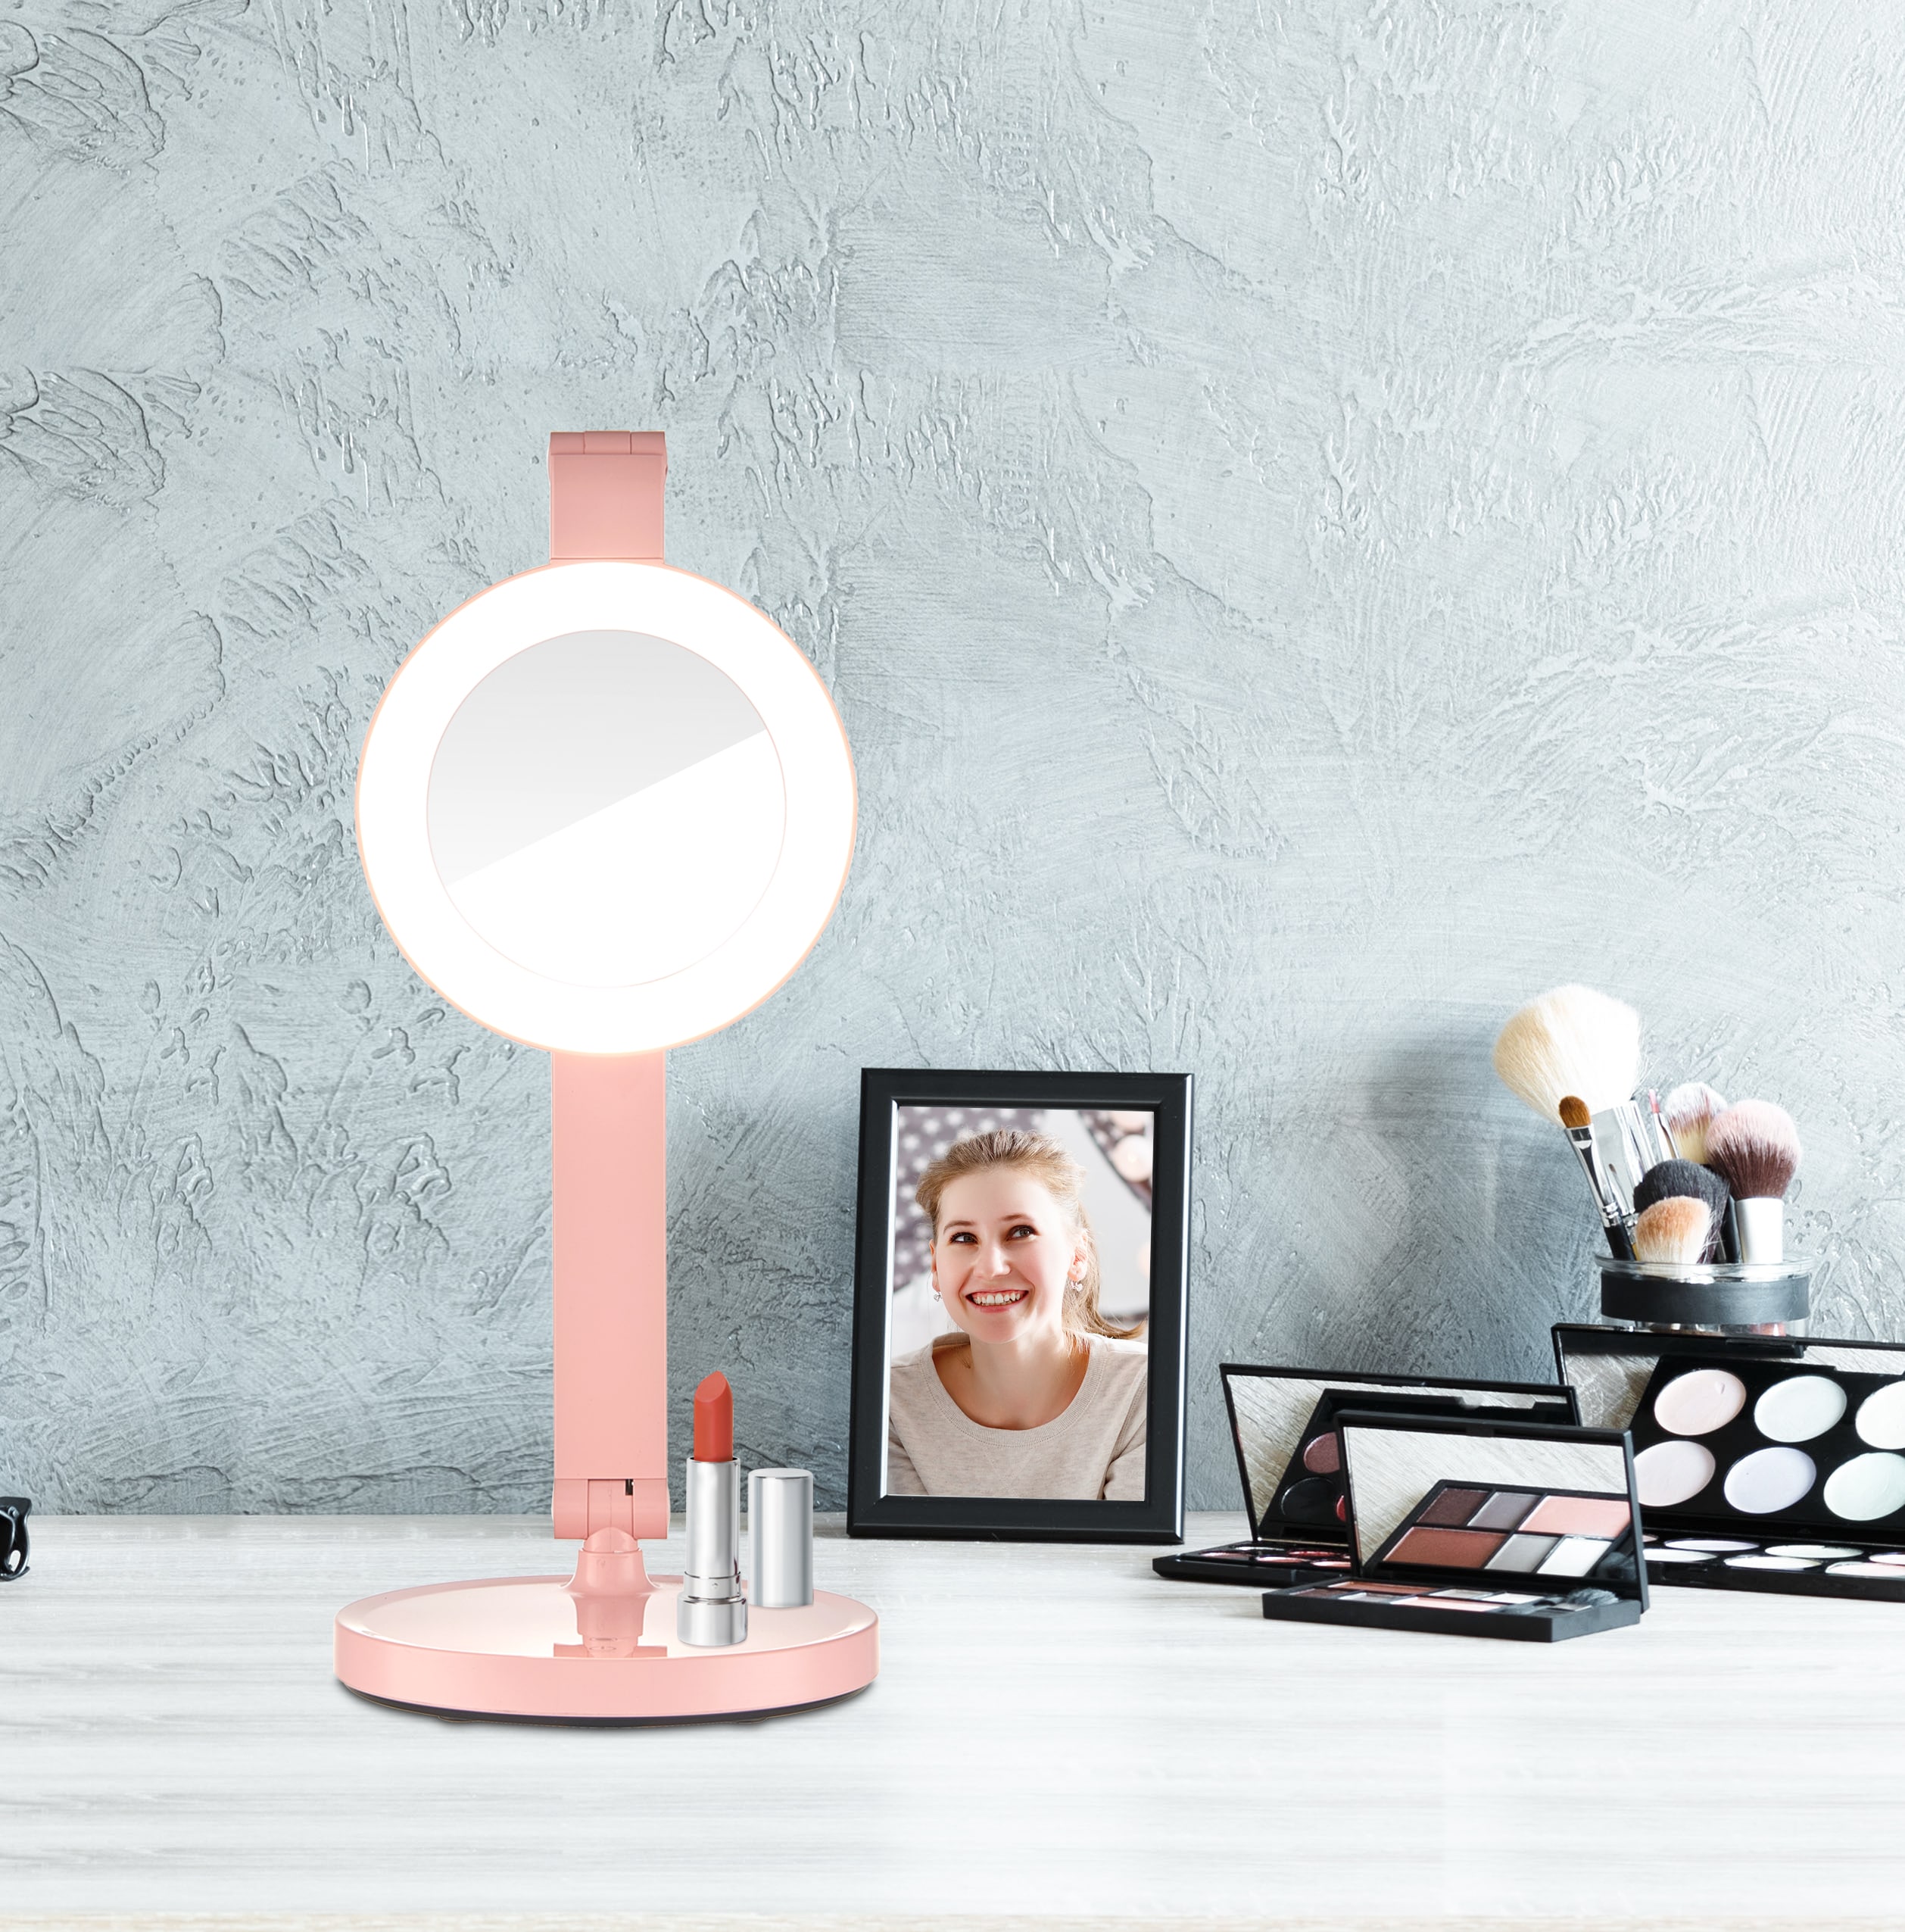 3 modes led ampoule miroir de maquillage beauté lampe de table de